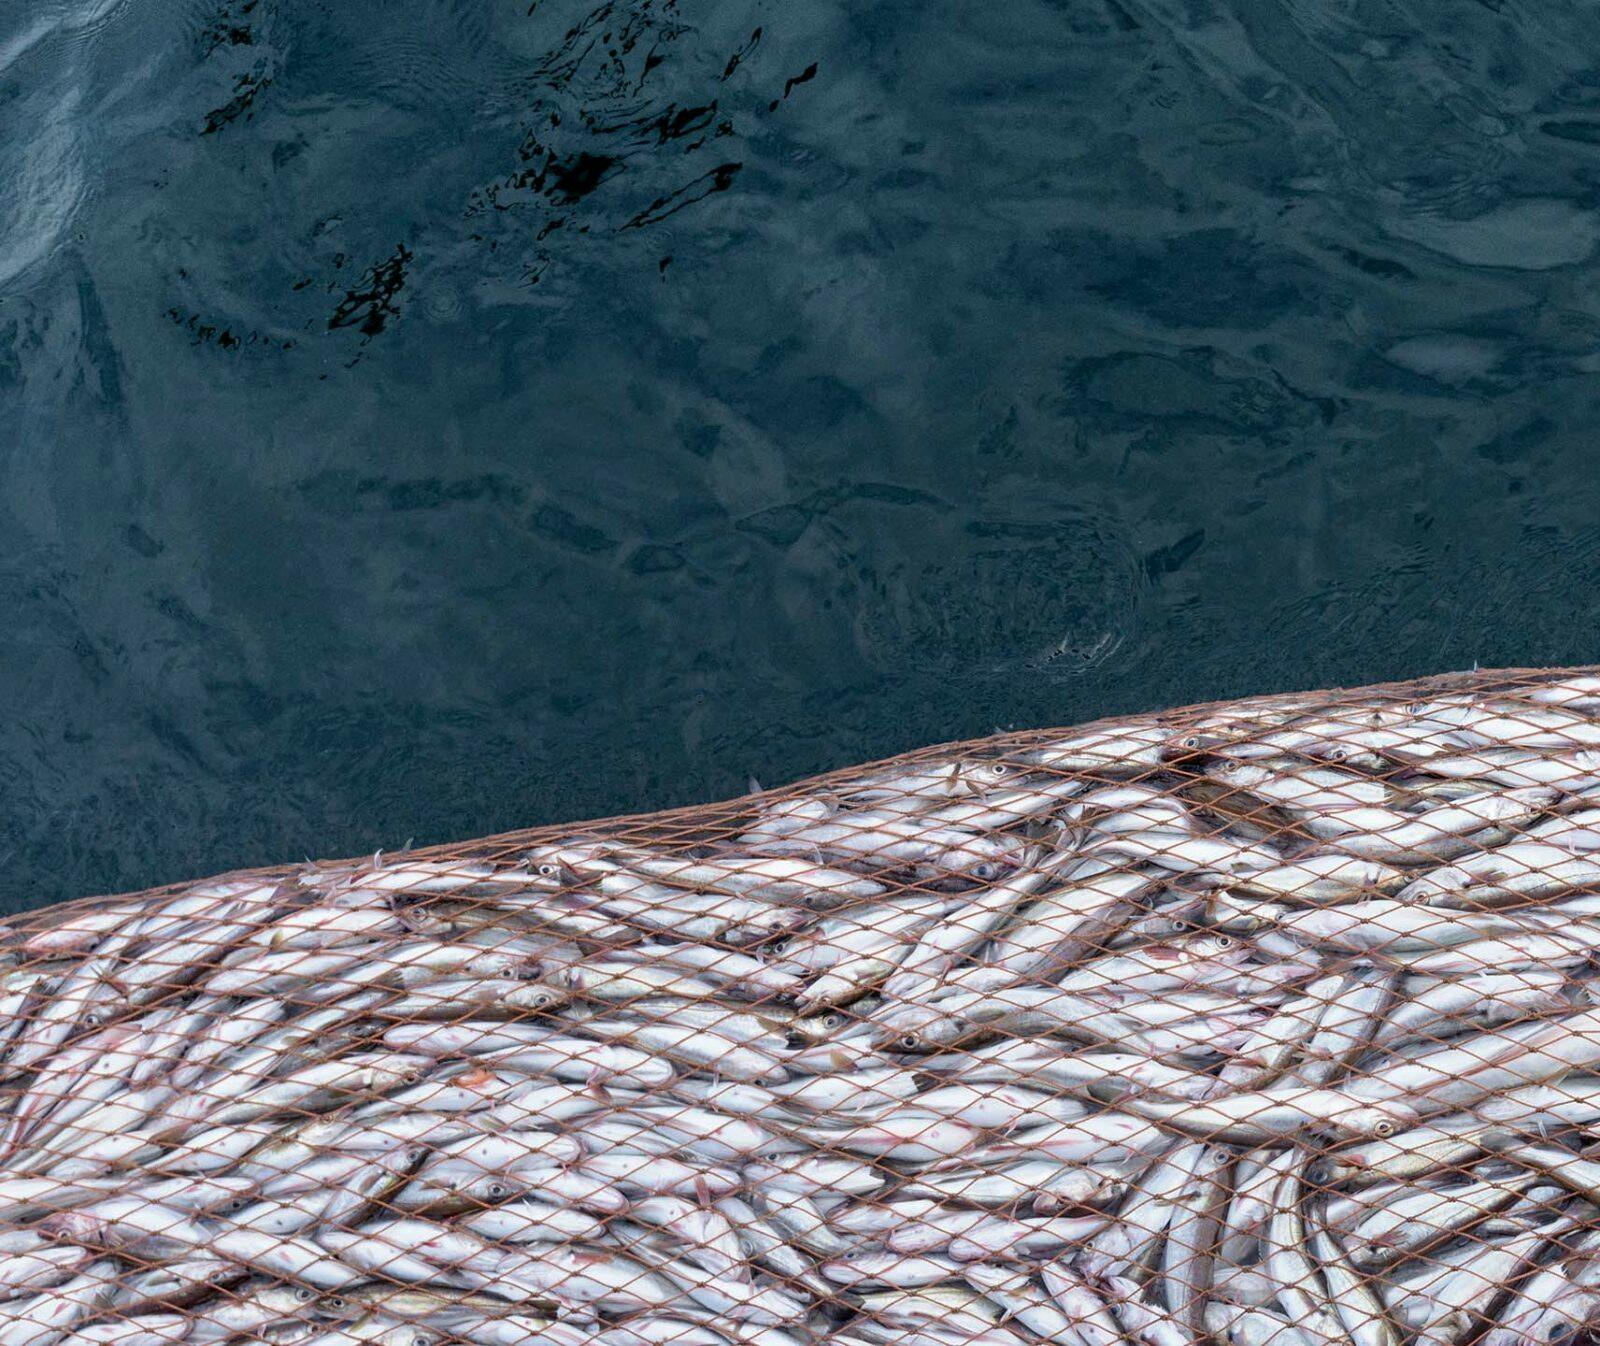 Skriv under för att stoppa överfisket. Bild på överfyllt fiskenät vid vattenytan.